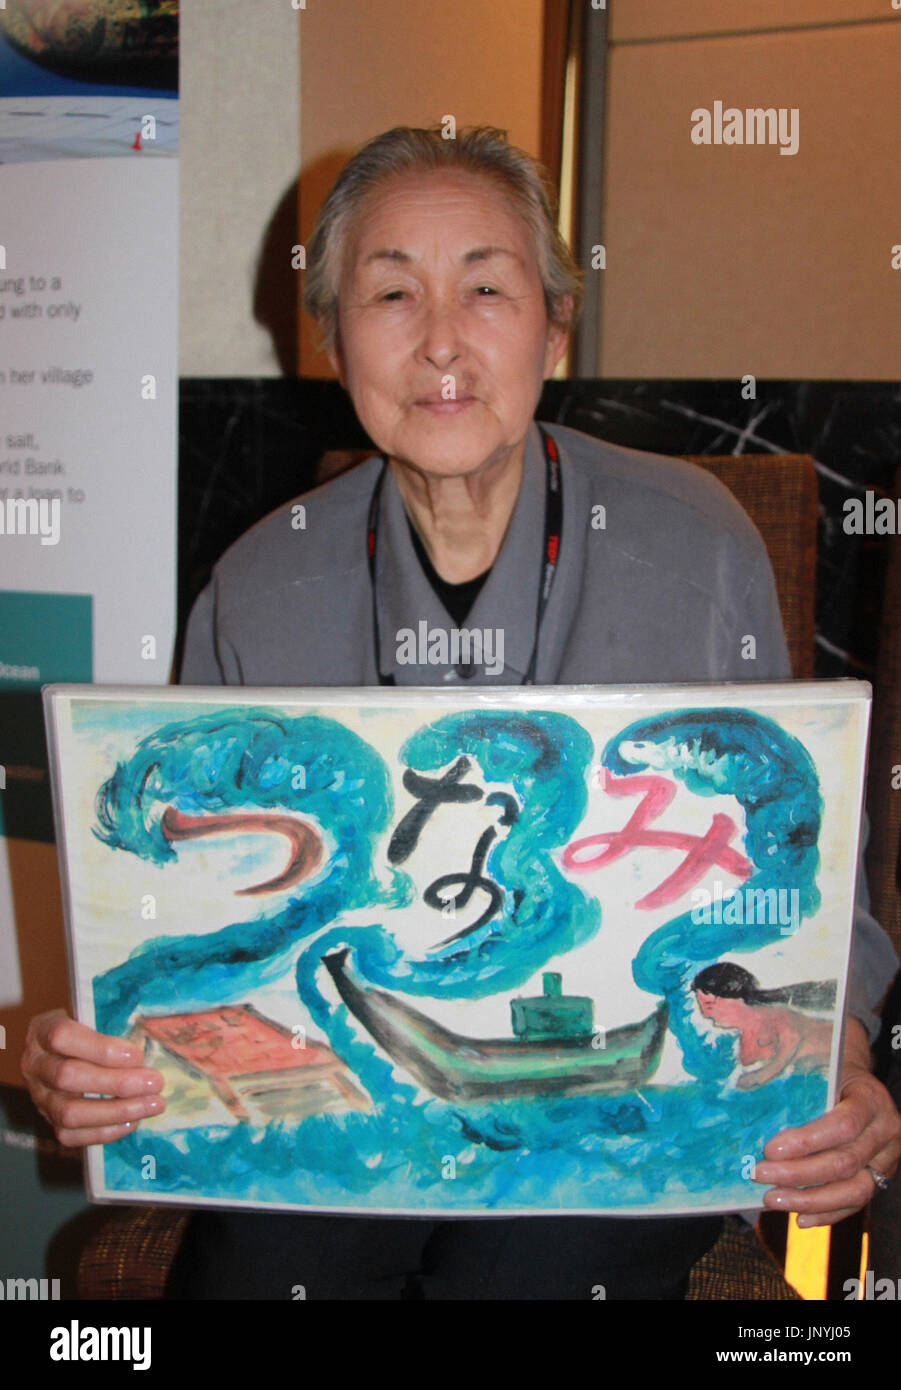 SENDAI, Japan - Foto in einem Hotel in der Stadt Sendai am 10. Oktober 2012, zeigt Yoshi Tabata halten, dass die Bilder für eine Bildergeschichte berechtigt "Tsunami" zeigen sie selbst zeichnete und schrieb. (Kyodo) Stockfoto